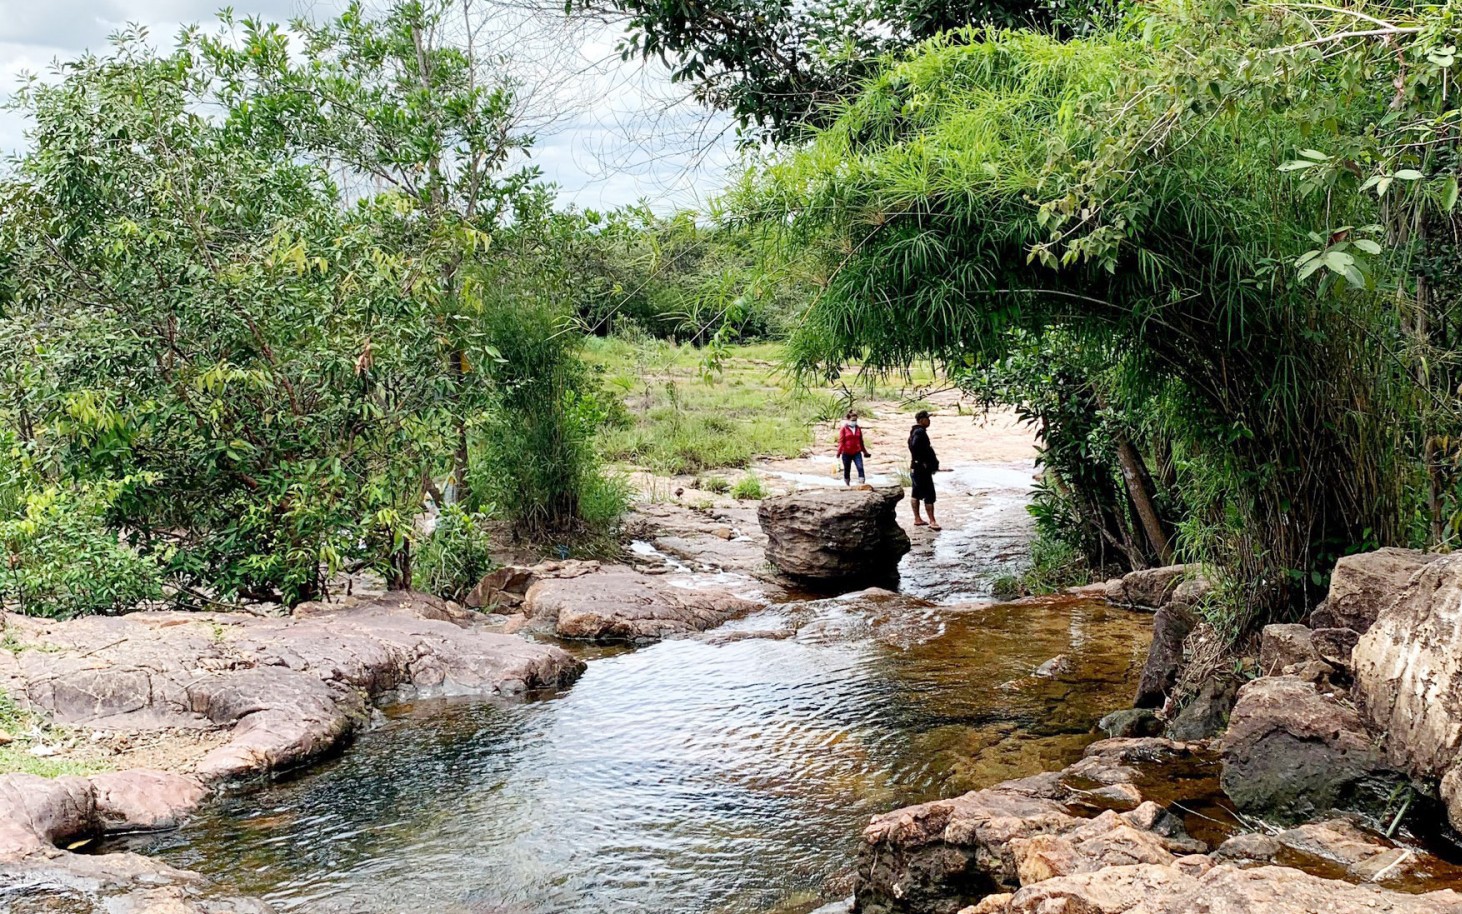 Vô một khu rừng nổi tiếng ở Bình Dương thấy dòng suối đẹp như phim, tên suối, tên cây rừng y chang nhau